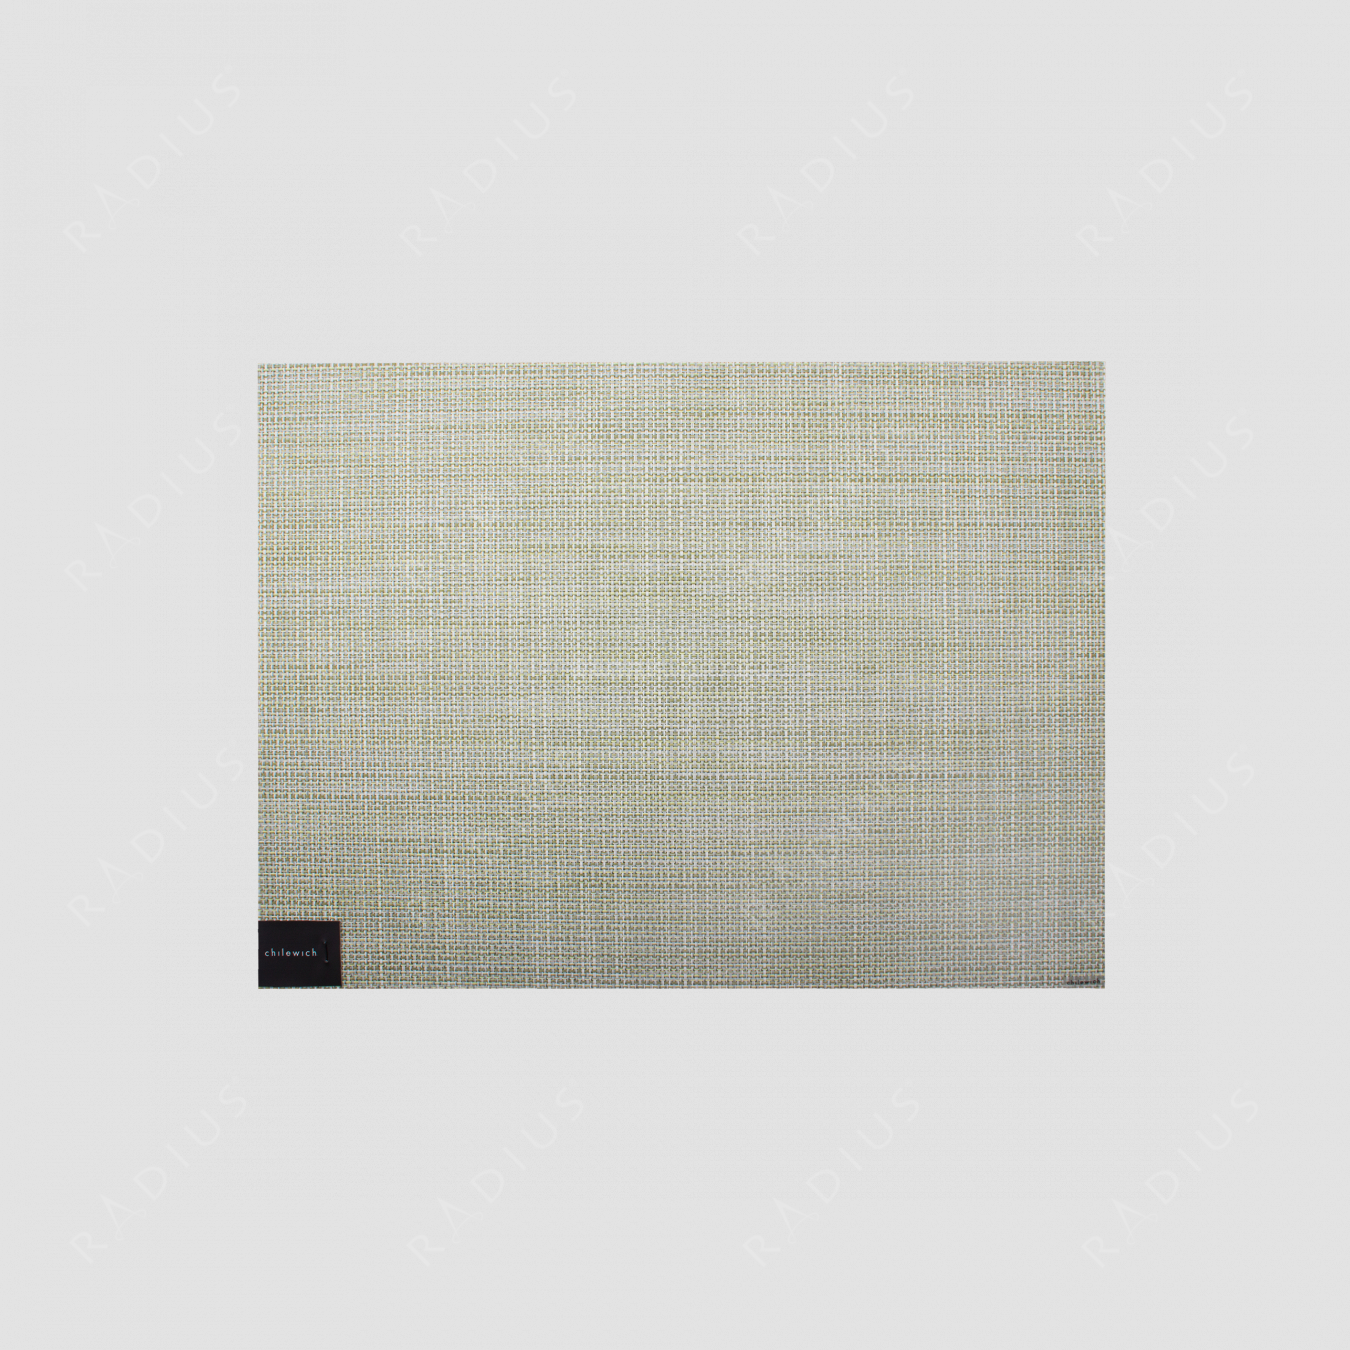 Салфетка подстановочная, жаккардовое плетение, винил, (36х48), Matcha, серия Mini Basketweave, CHILEWICH, США